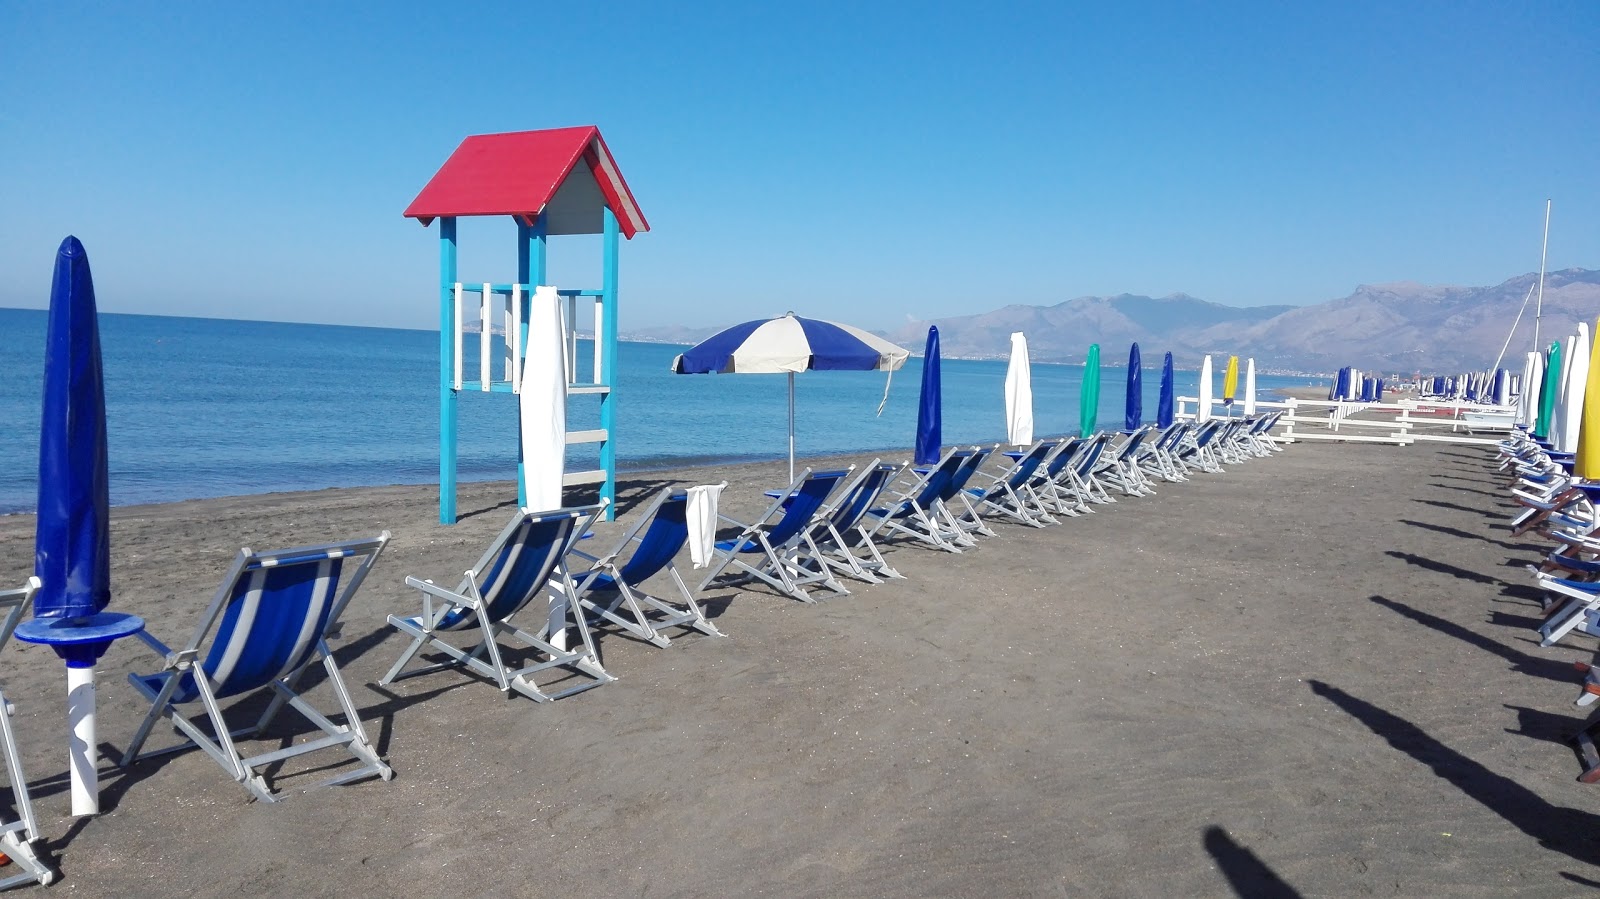 Photo de Baia Domizia beach - endroit populaire parmi les connaisseurs de la détente